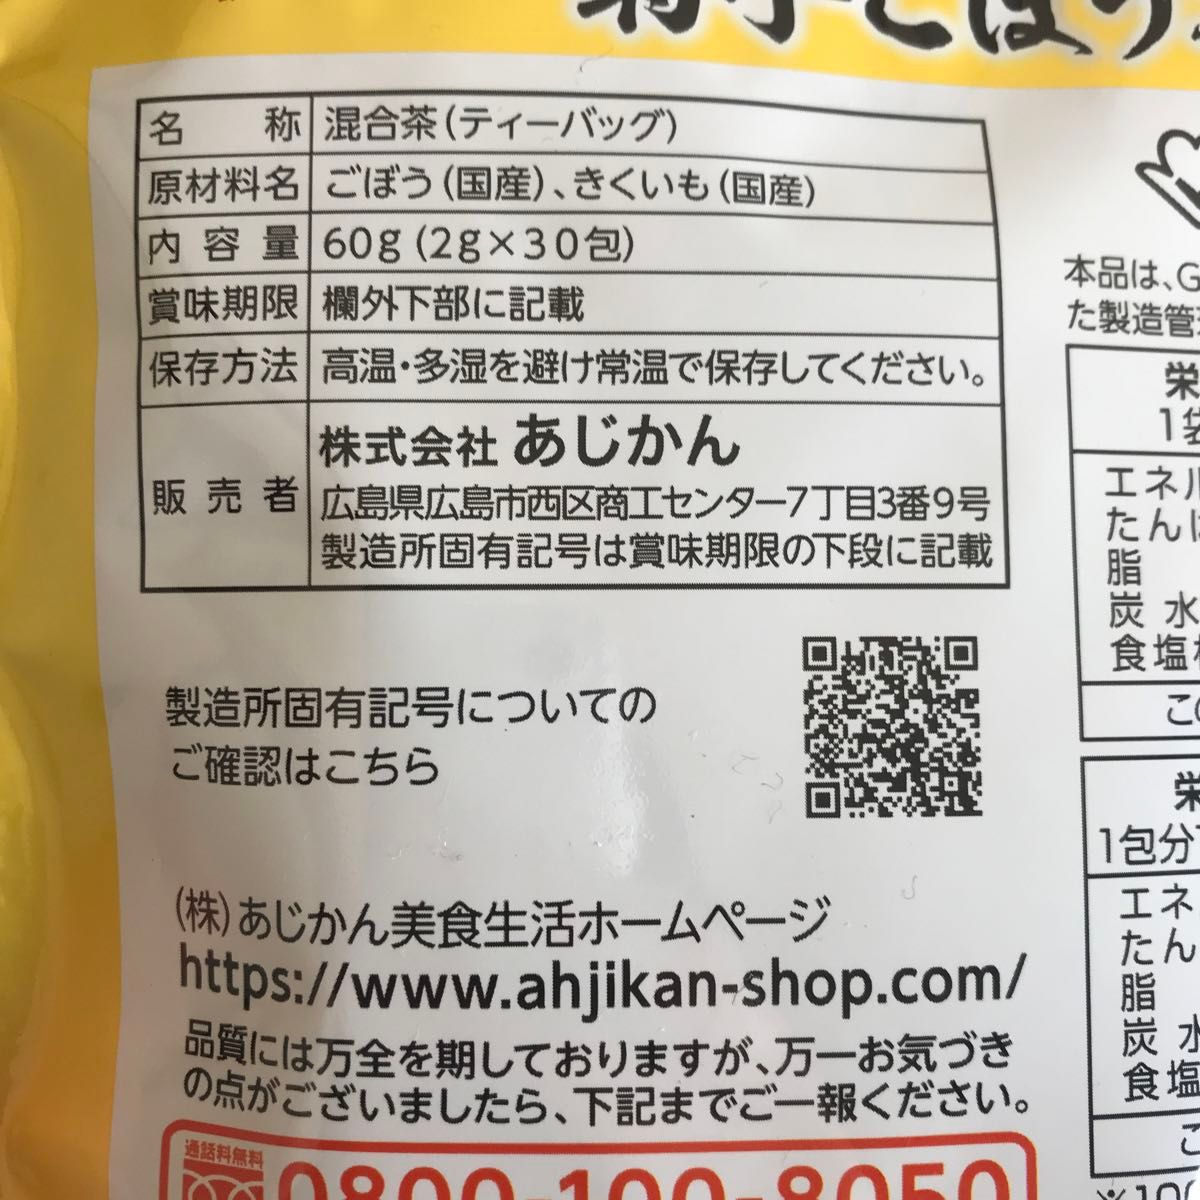 あじかん 国産菊芋ごぼう茶 菊芋のおかげ 30包